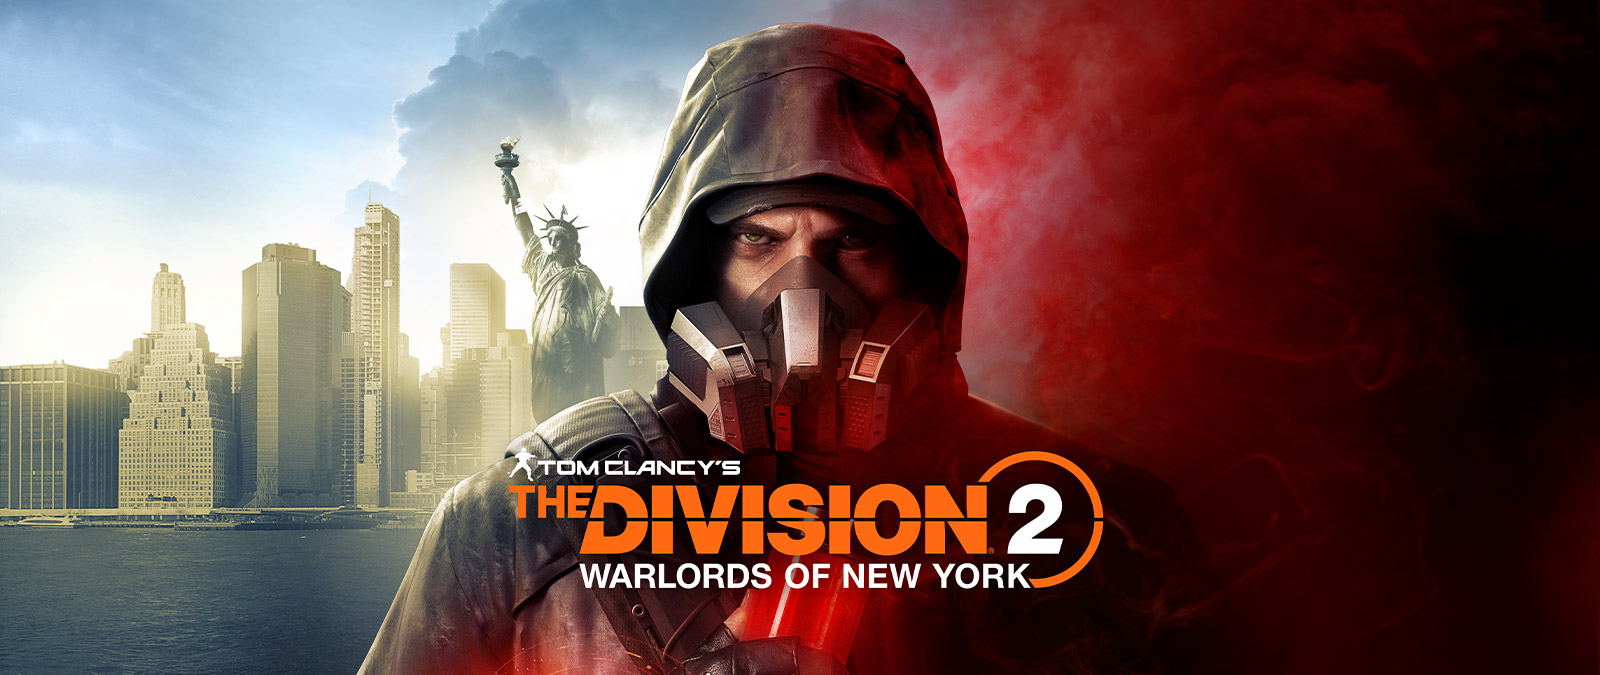 Tom Clancy’s The Division 2 Warlords of New York, Aaron Keener kaasunaamarissa seisoo Vapaudenpatsaan edessä